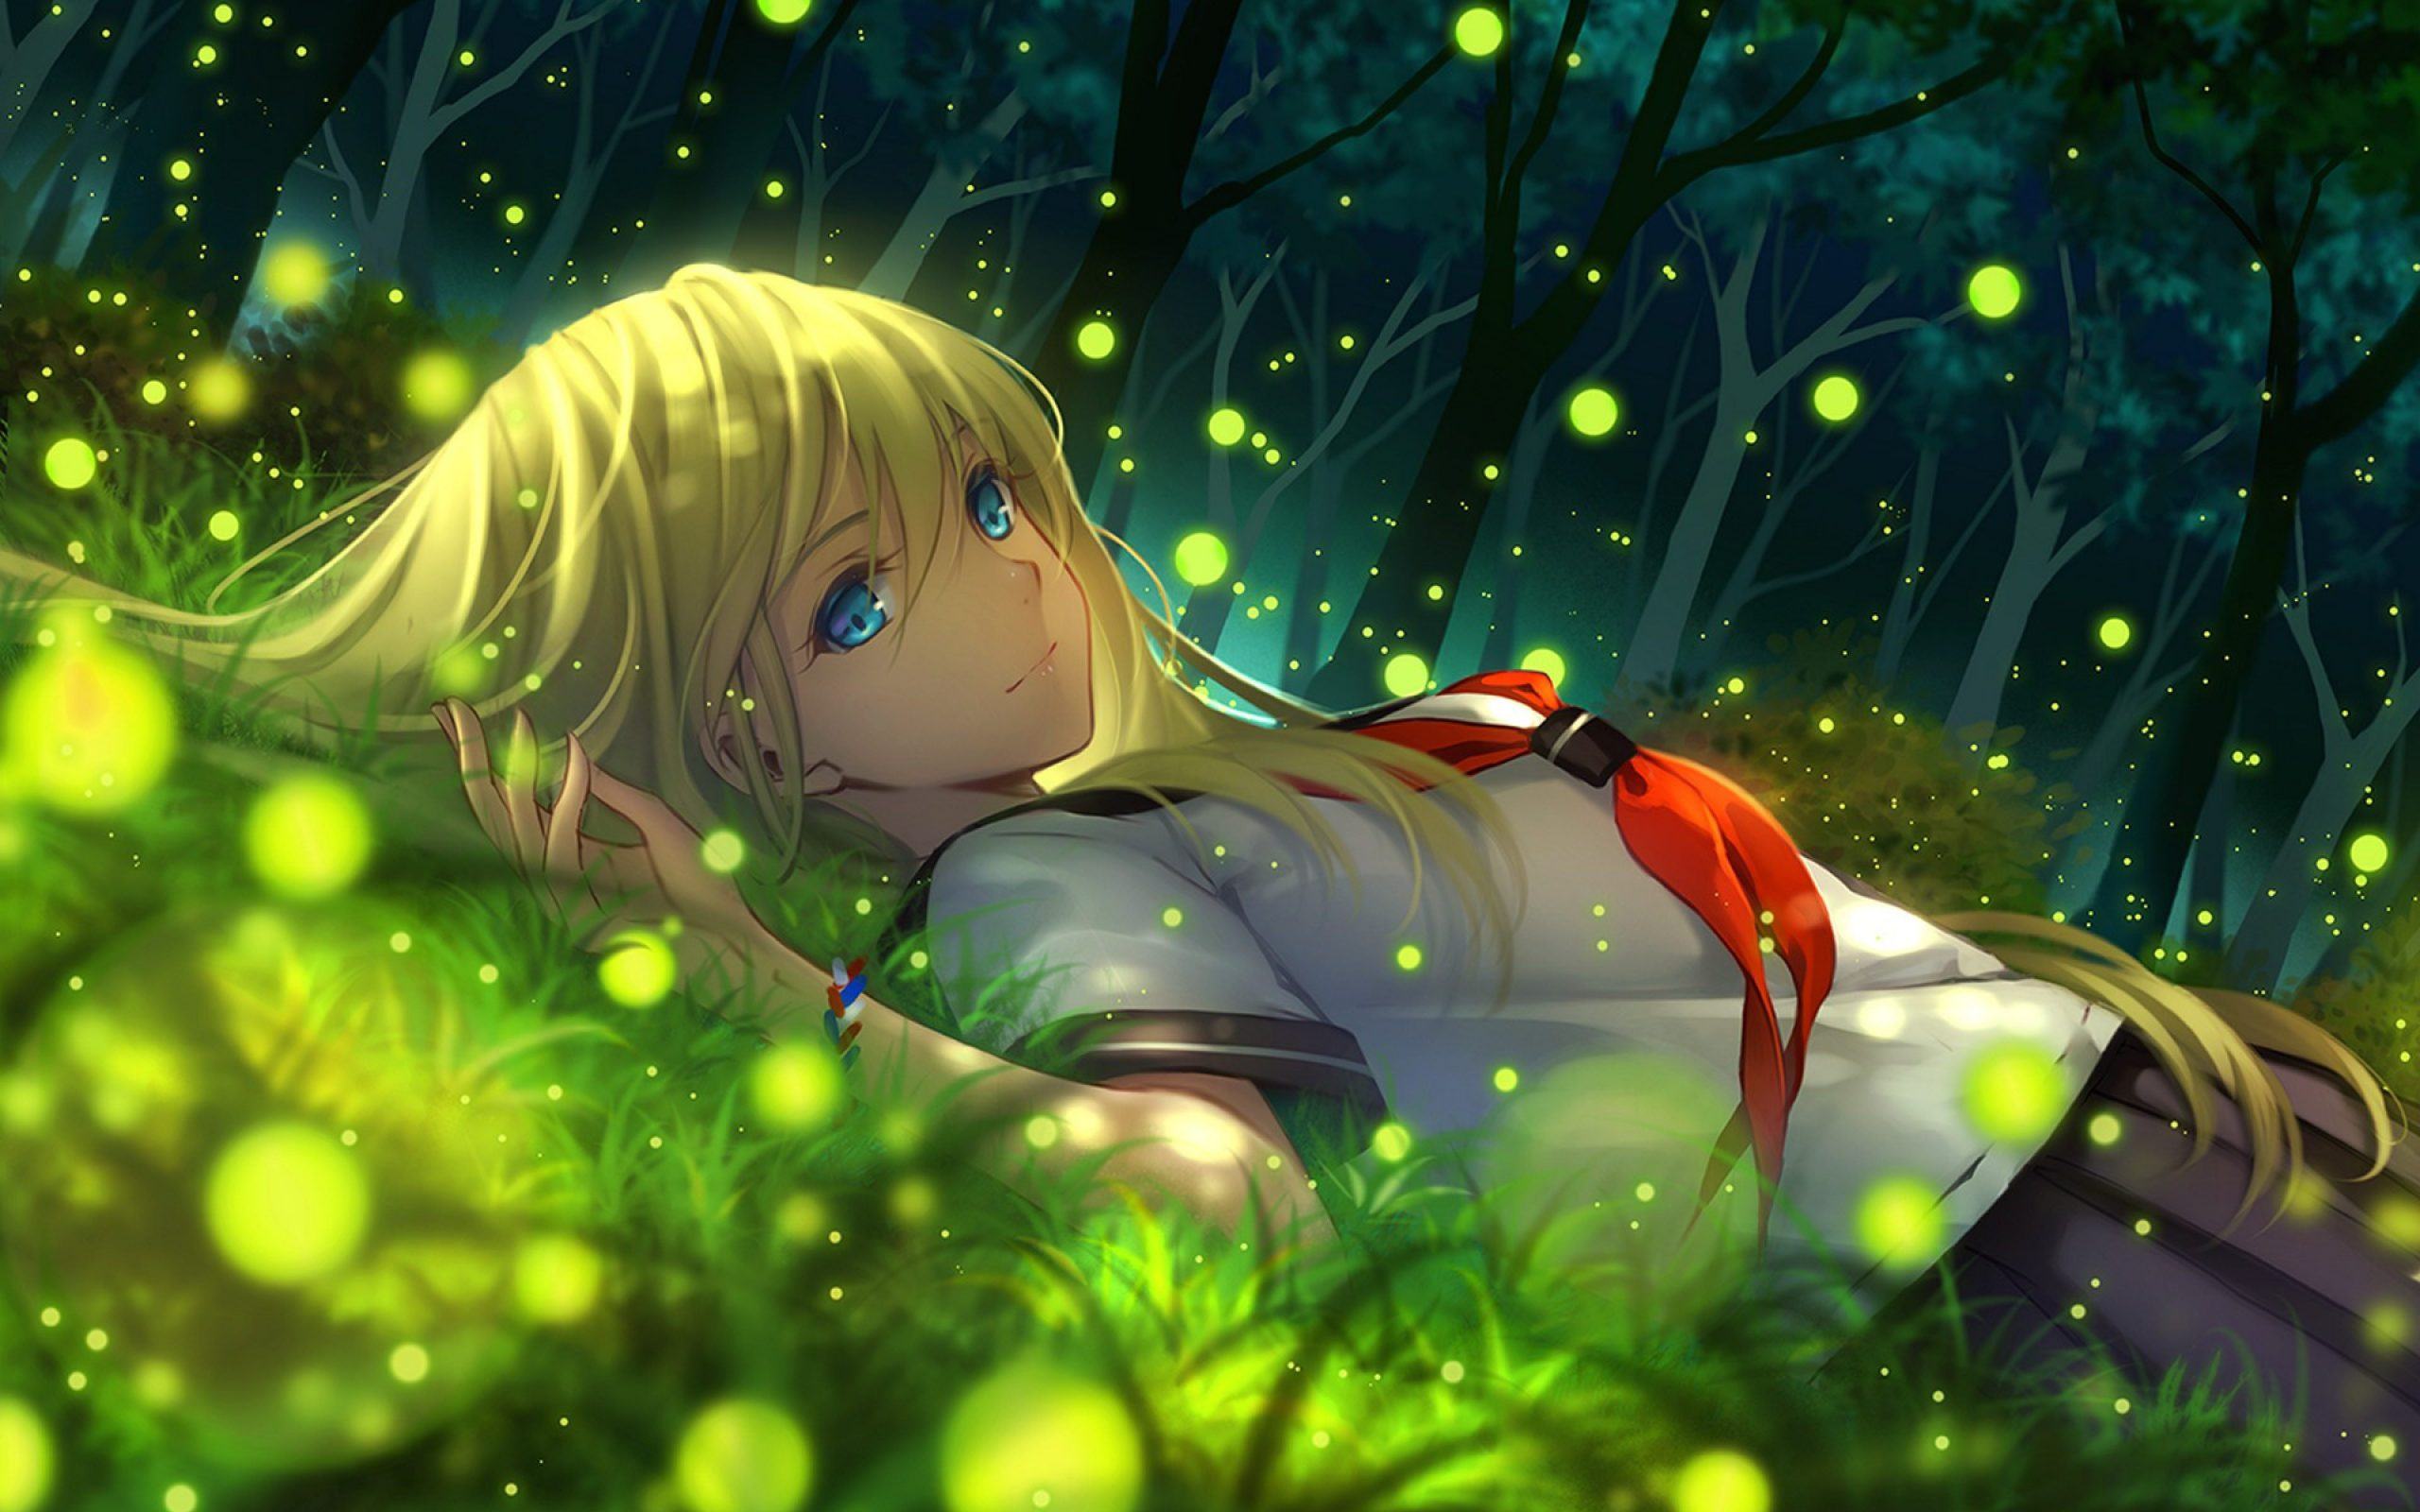 Hình ảnh hoạt hình của một cô gái xinh đẹp trong khu rừng đầy dấu chấm